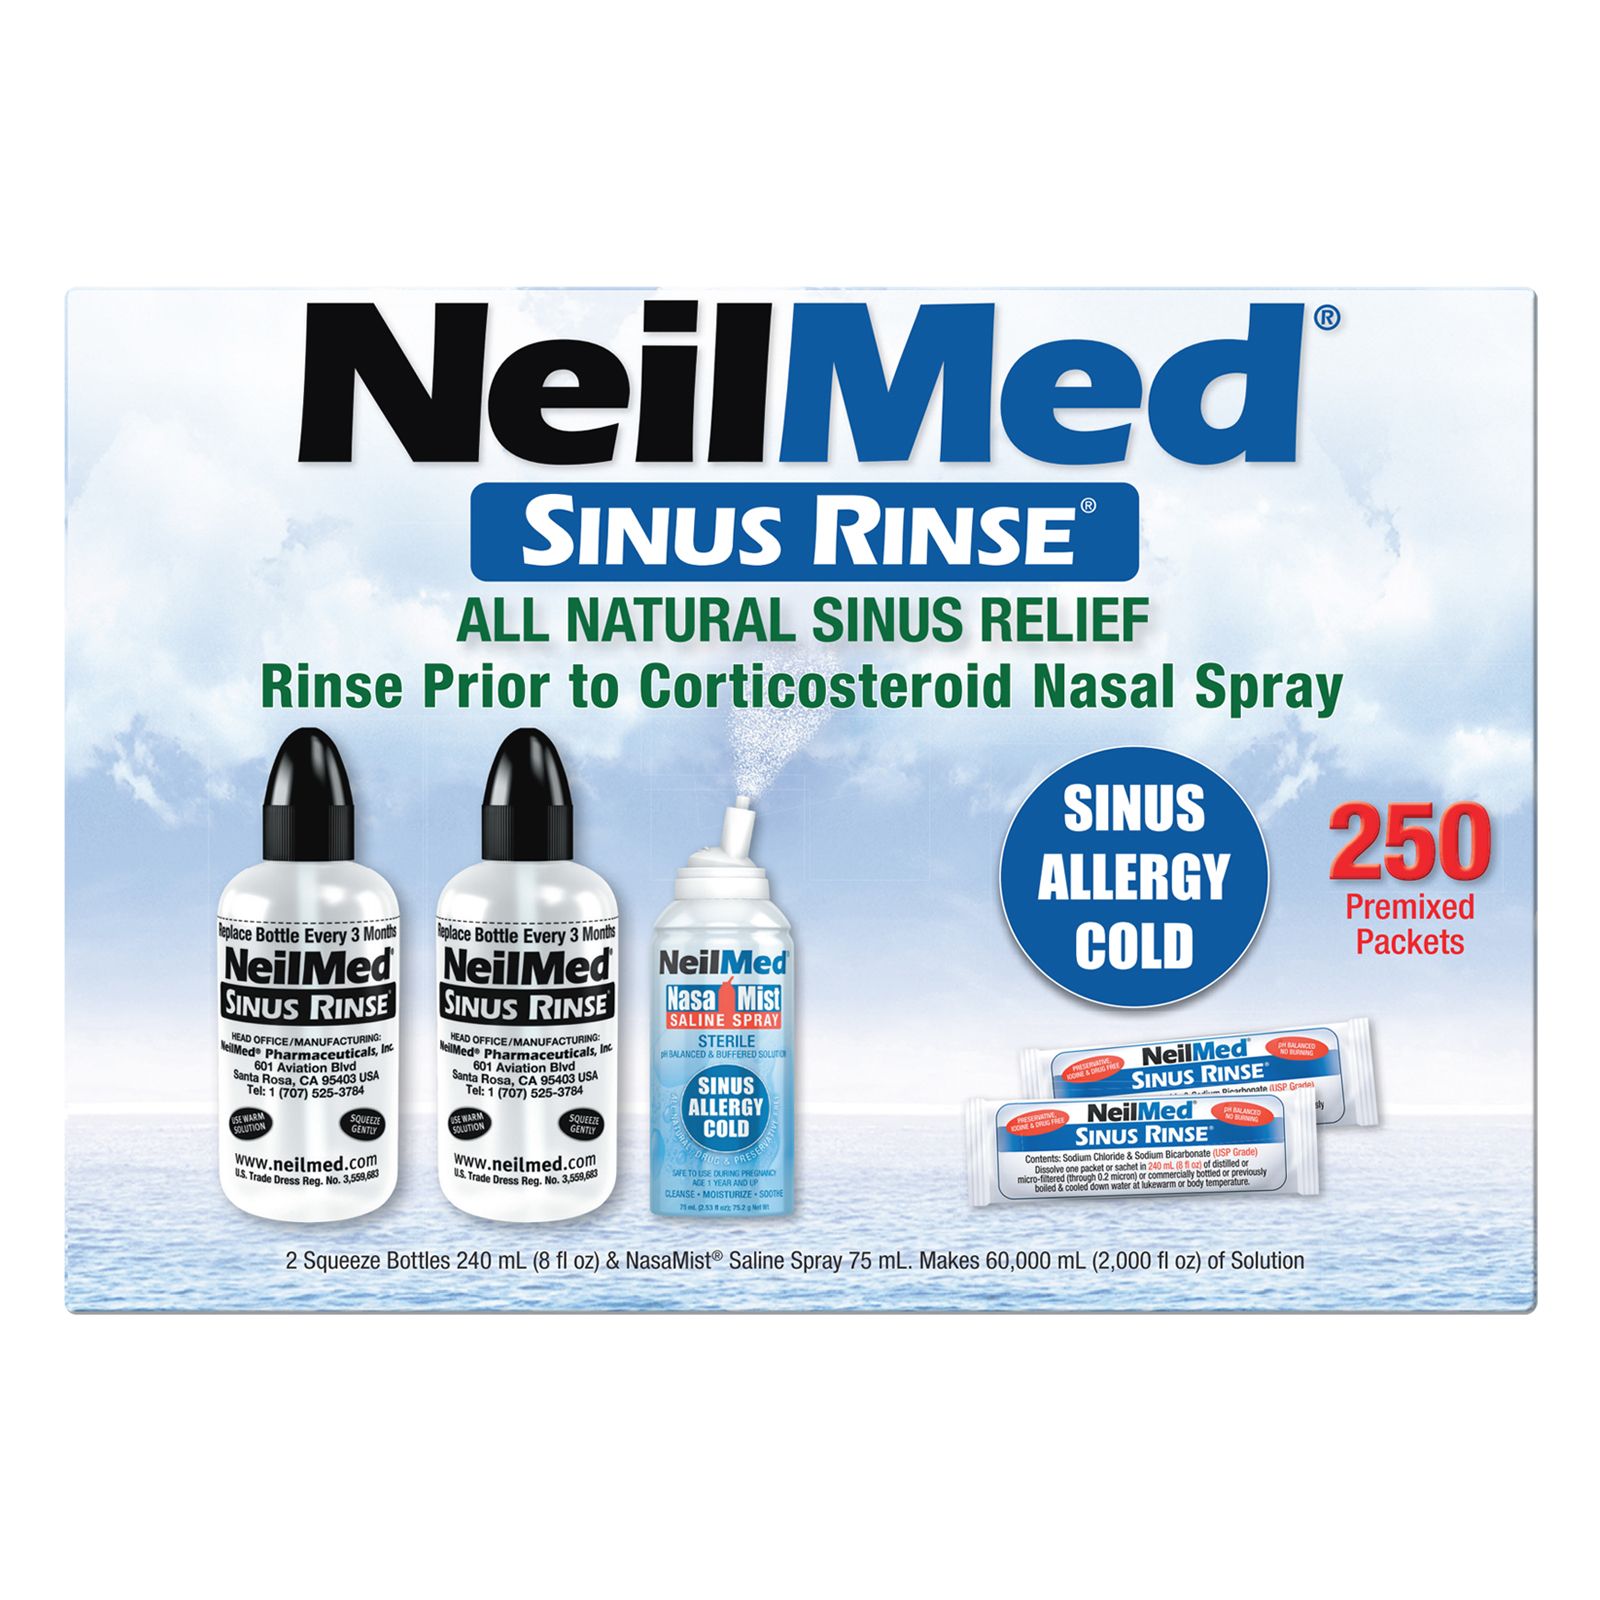 FSA Eligible | NeilMed Sinus Rinse Regular Kit, 1 kit